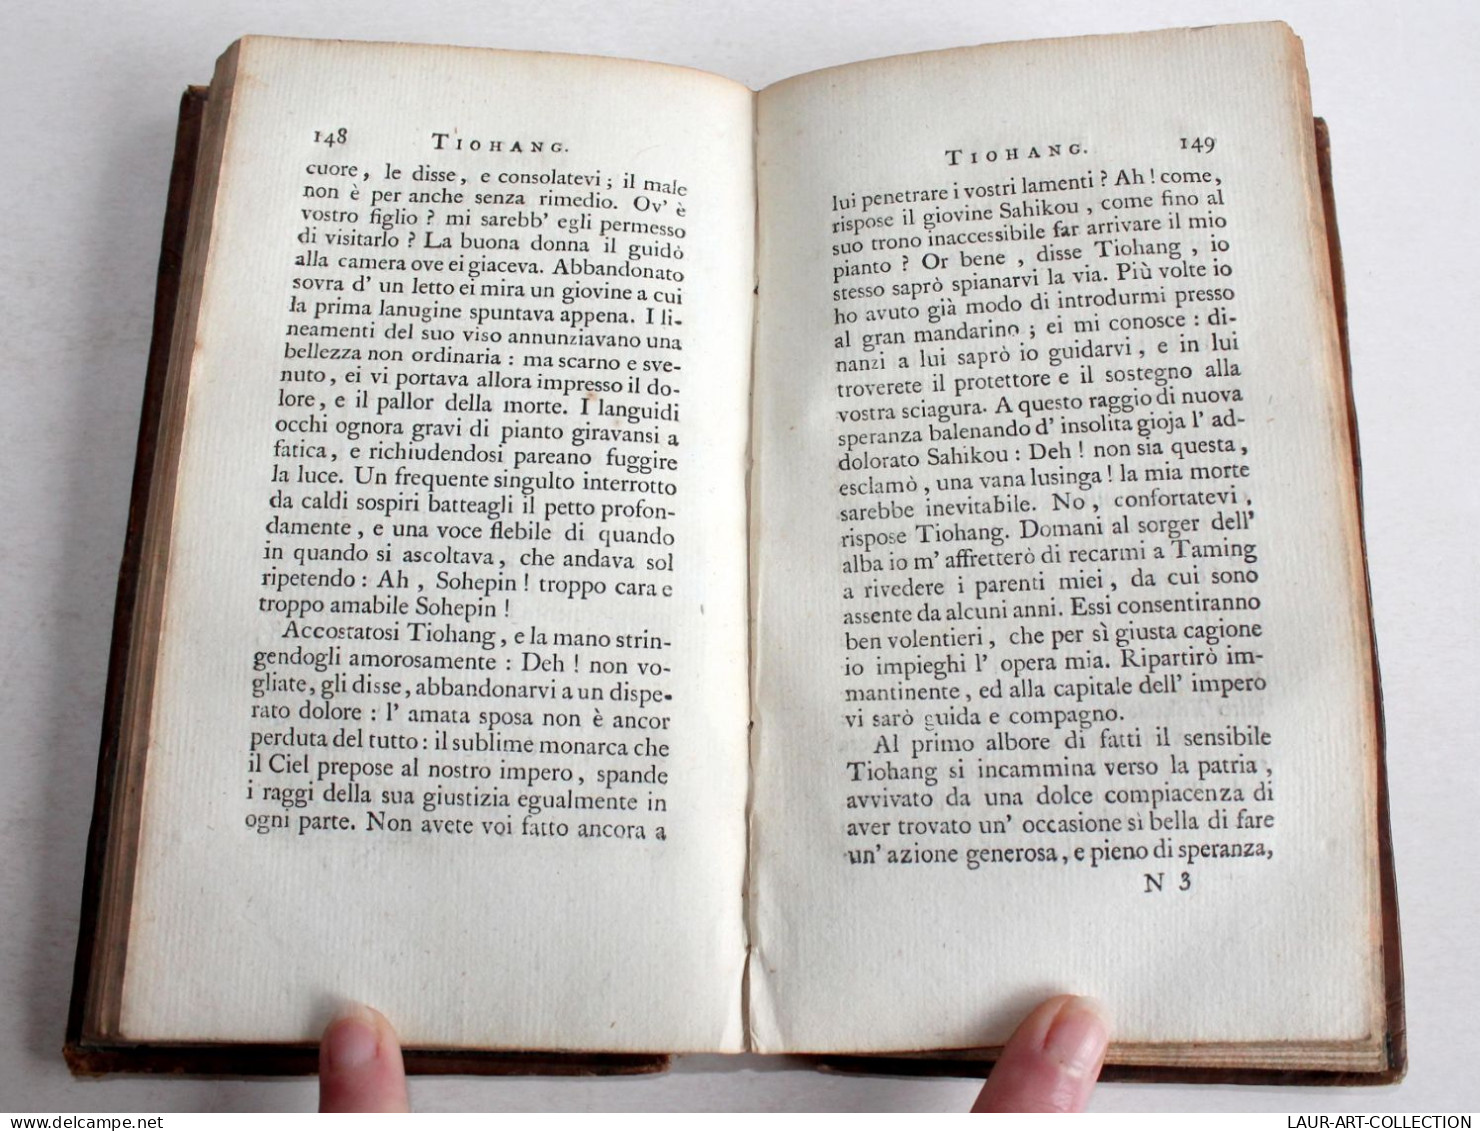 NOVELLE MORALI DI FRANCESCO SOAVE 1798 COMPLET PARTIE 1+2 /2, NOUVELLE ITALIENNE / ANCIEN LIVRE XVIIIe SIECLE (2204.52) - Old Books